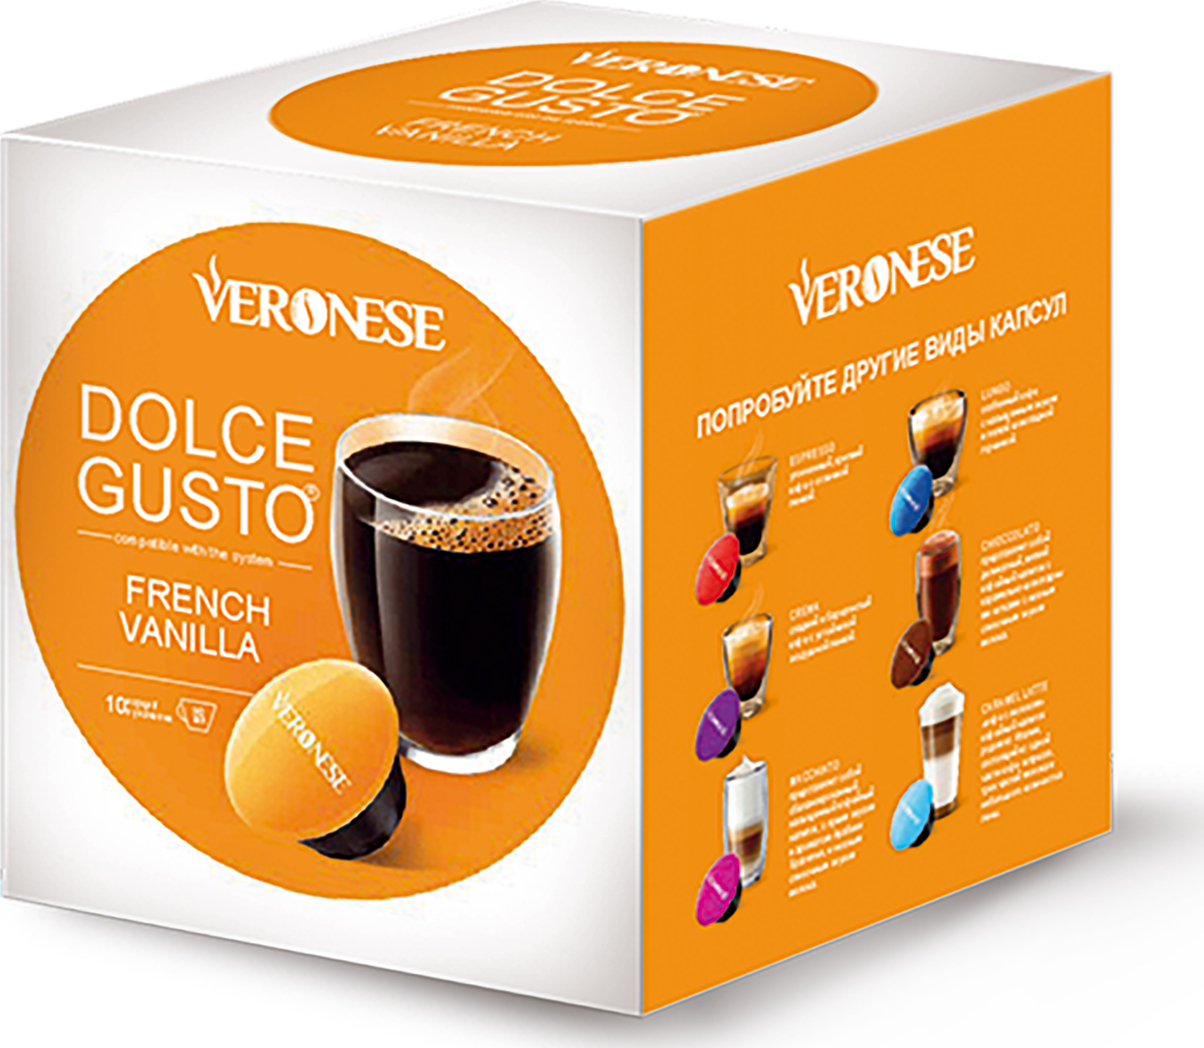 Какие капсулы dolce gusto. Veronese кофе в капсулах Dolce gusto. Nespresso Dolce gusto капсулы. Капсулы для кофе Дольче густо Веронезе. Капсулы для кофемашины Дольче густо.